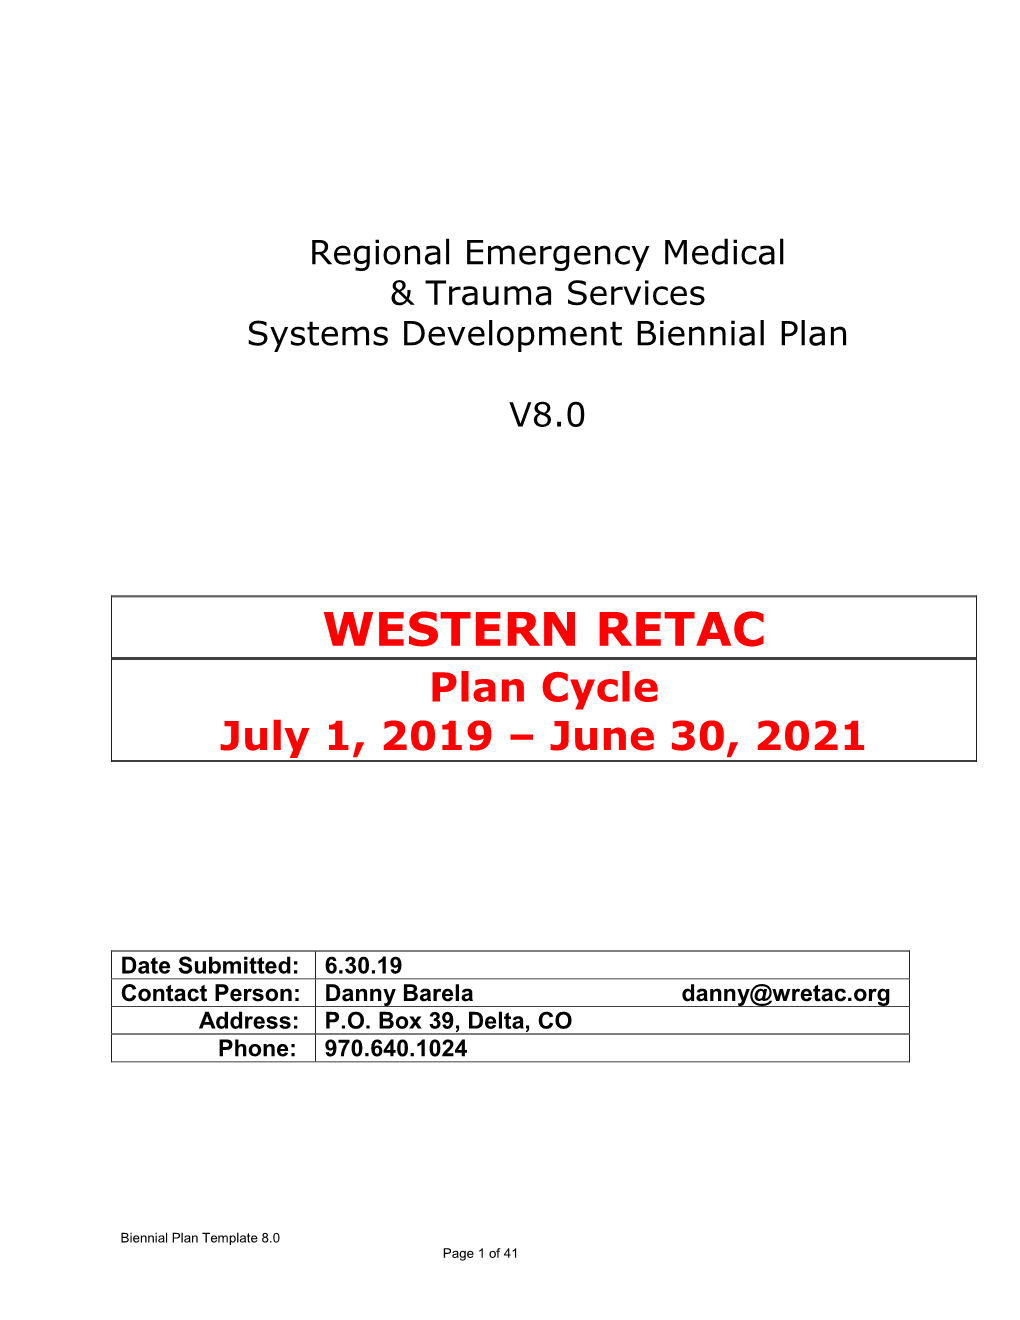 WESTERN RETAC Plan Cycle July 1, 2019 – June 30, 2021